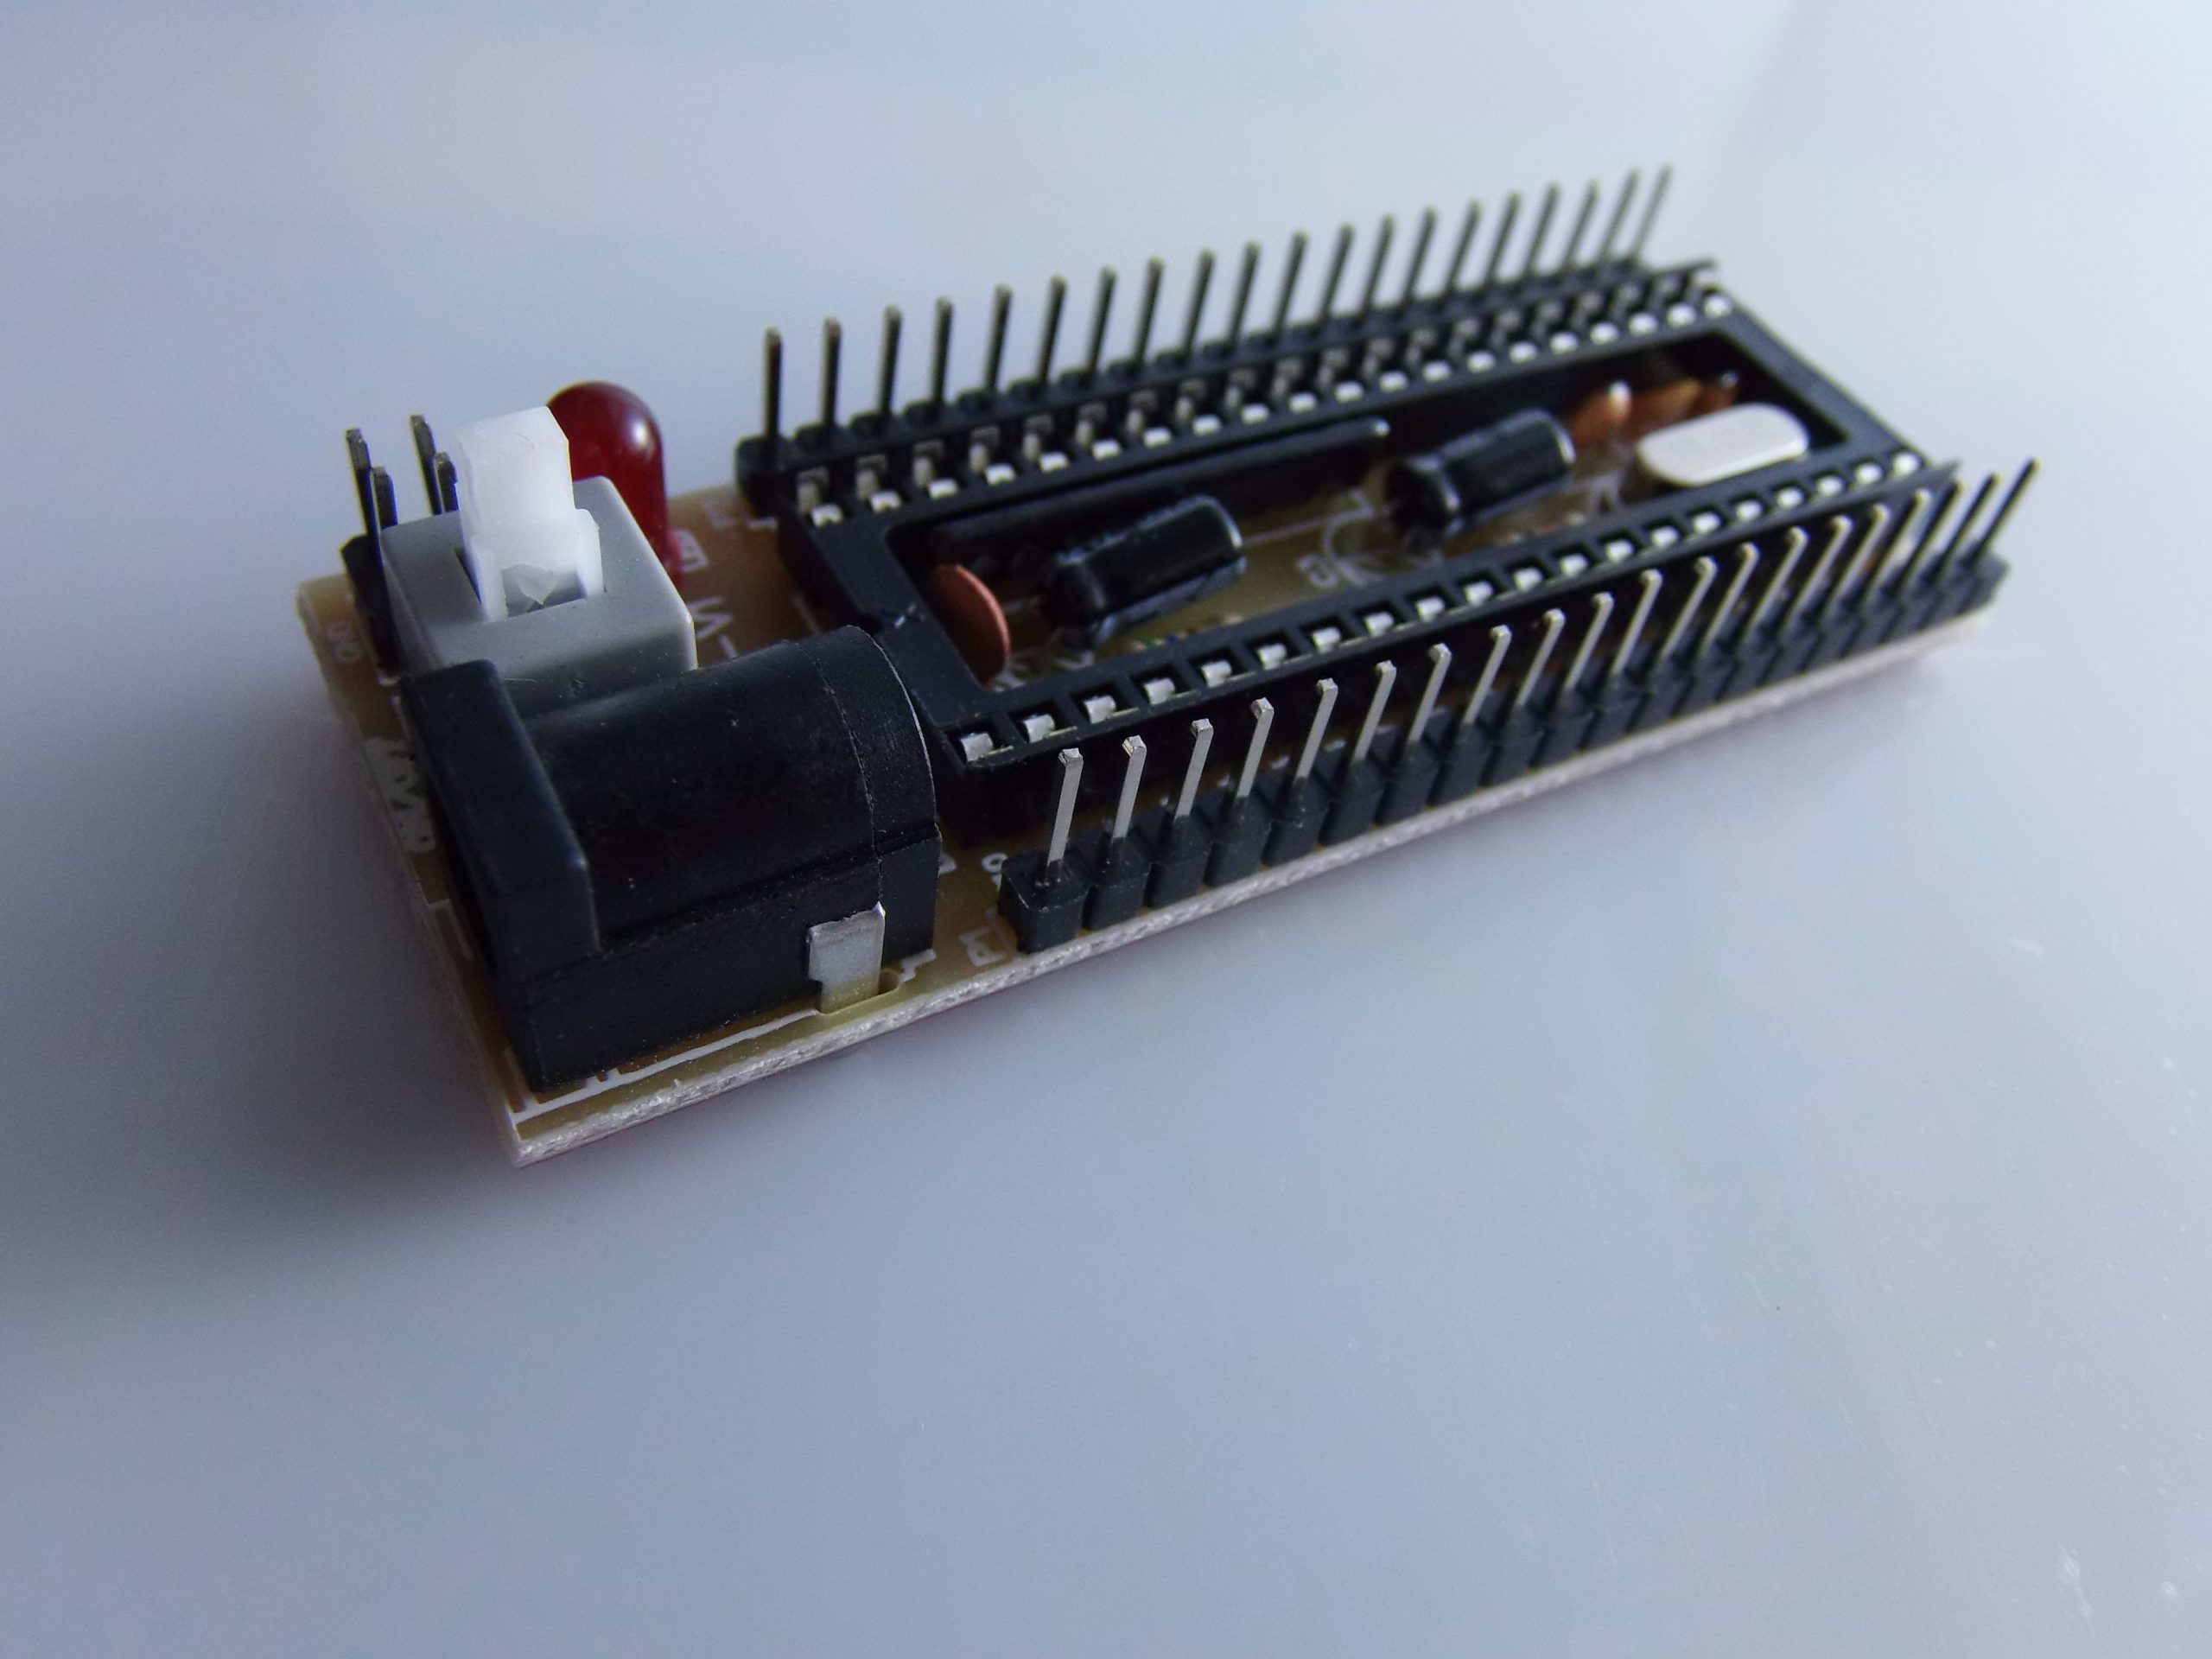 YS 51 Scheda di Sviluppo su STC singolo chip scheda di sistema minimi  microcomputer - CircuitoIntegrato - Vendita al dettaglio e all'ingrosso di  componenti di elettronica, domotica, robotica.